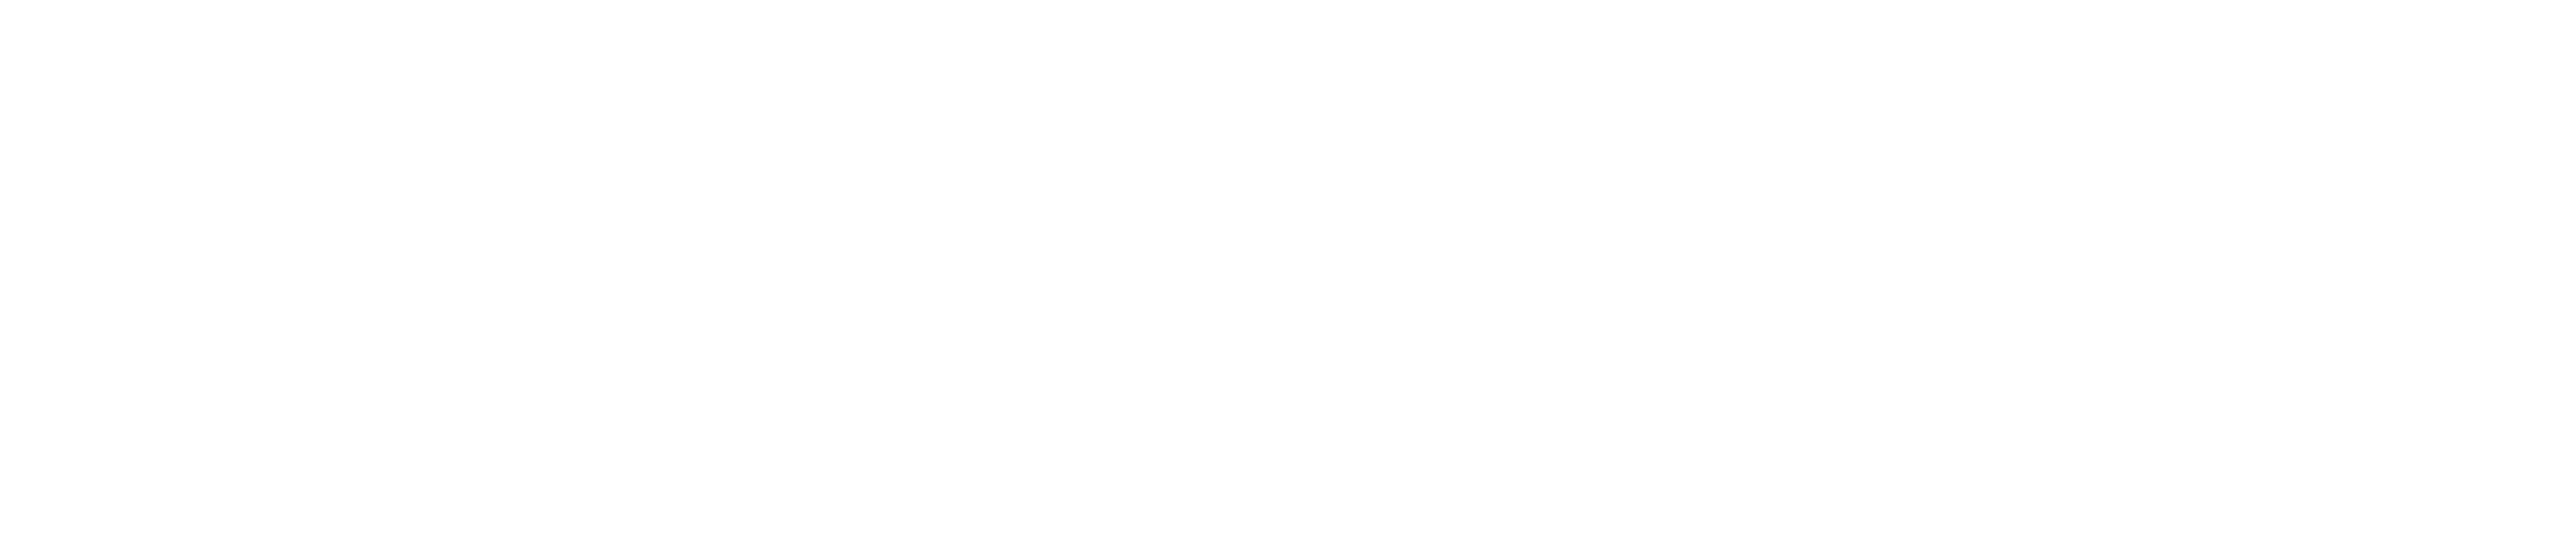 BiopharmIQ - Affiliate Program